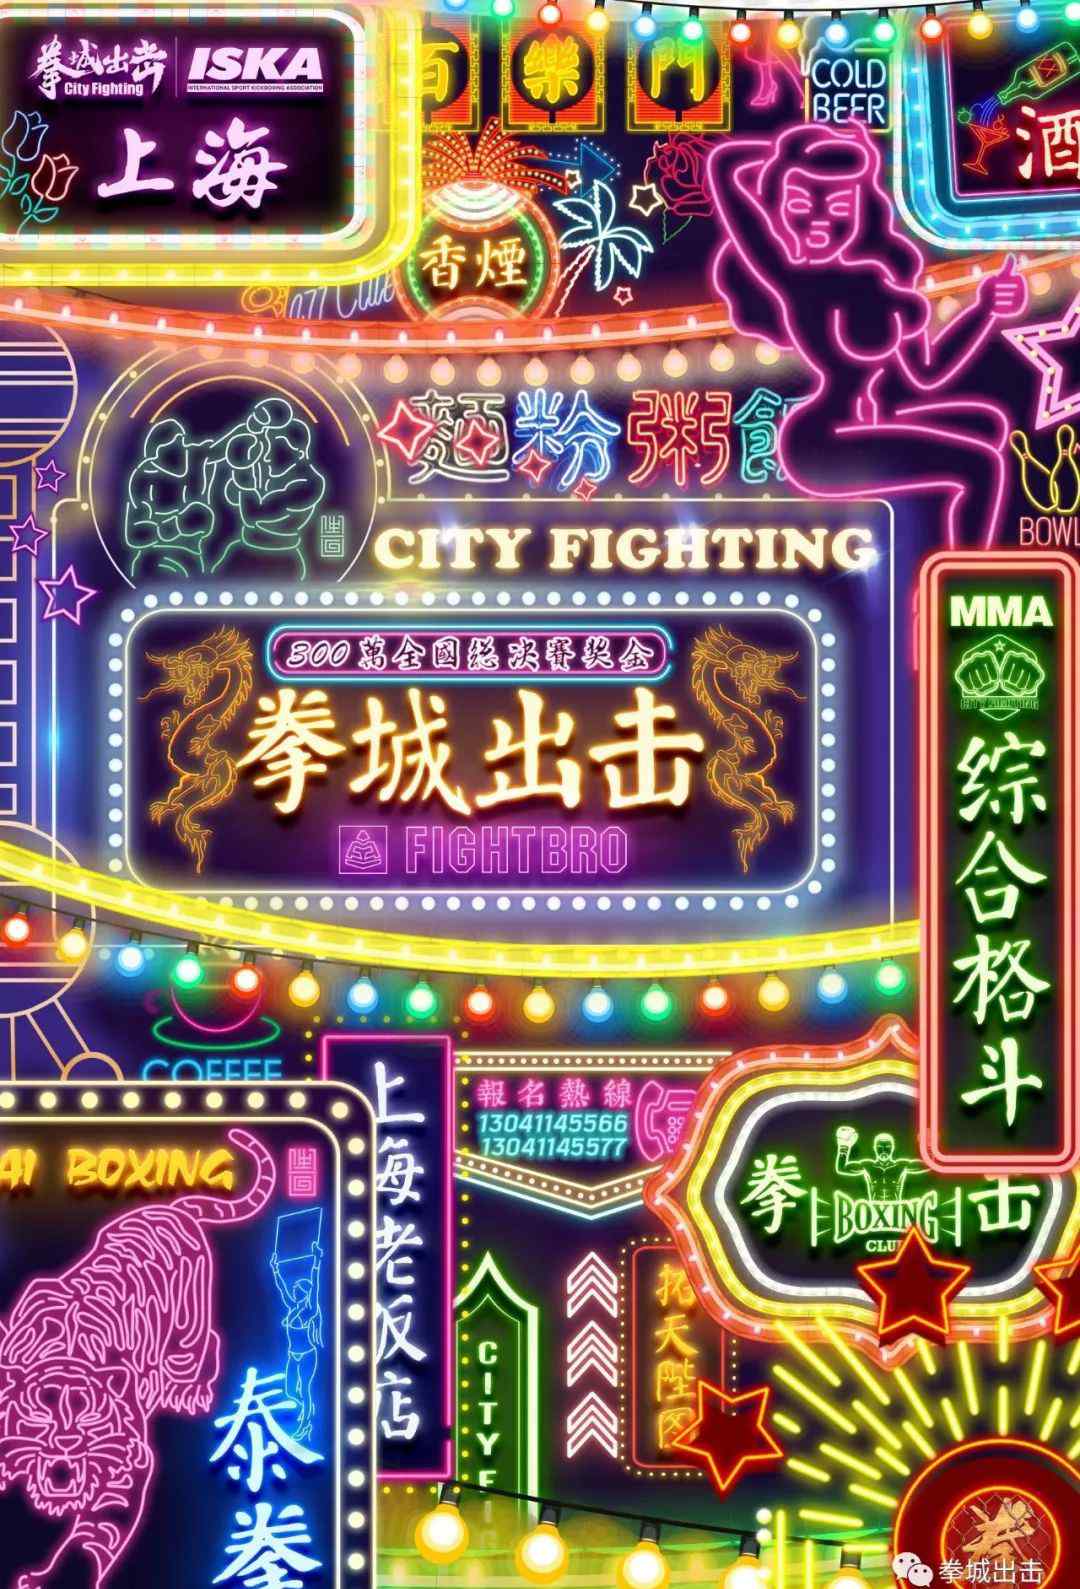 蔡志鸿 拳城出击上海站第一比赛日对战表公布